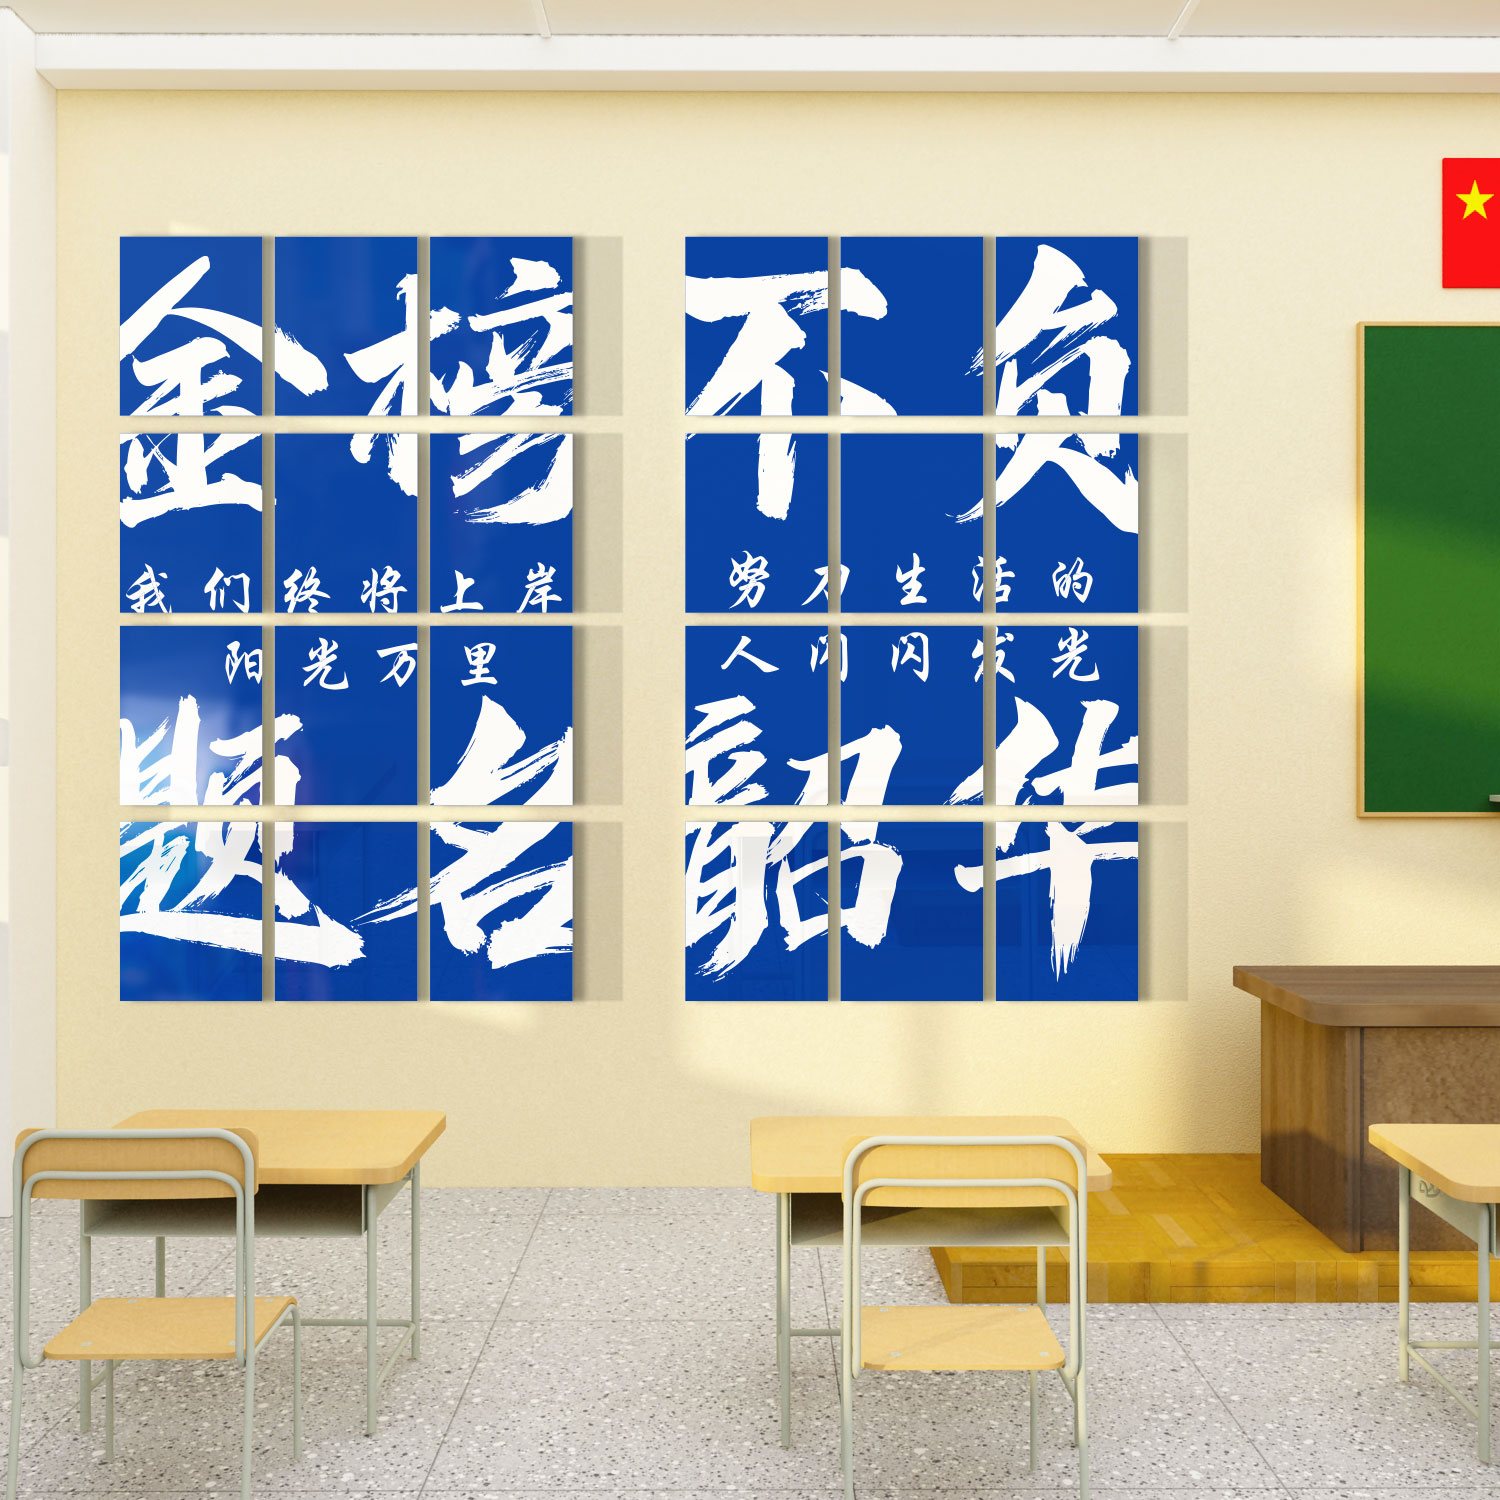 开学教室装饰布置墙面装饰布置